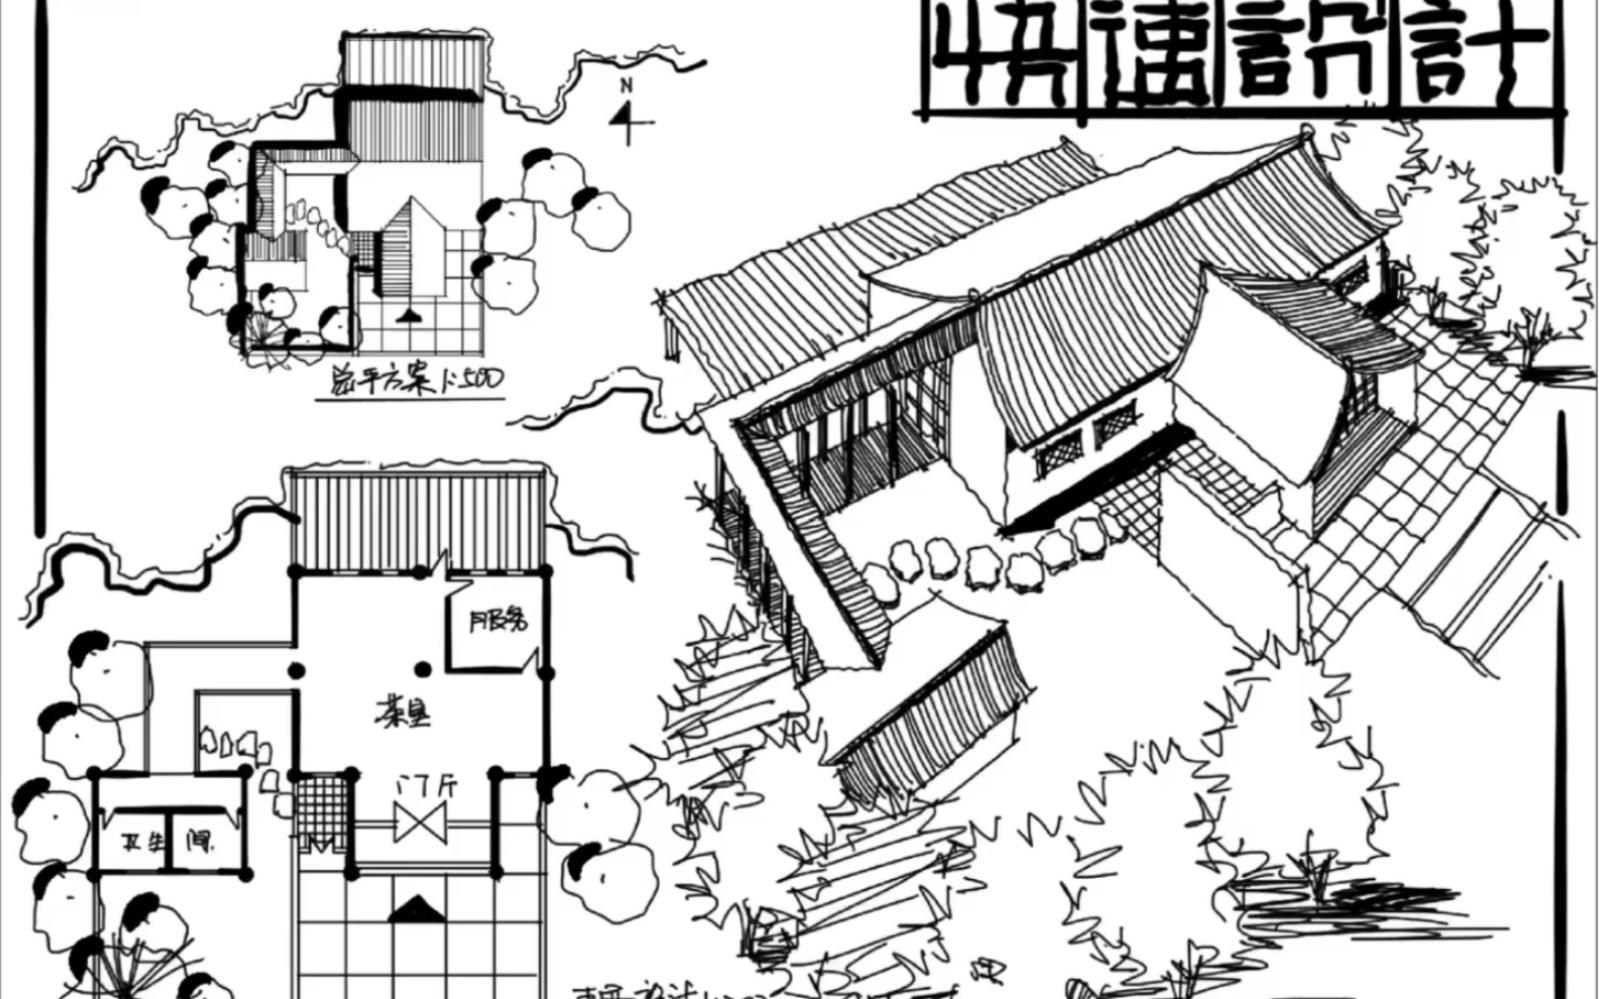 四川大学风景园林考研——2011年茶室建筑快速草图设计